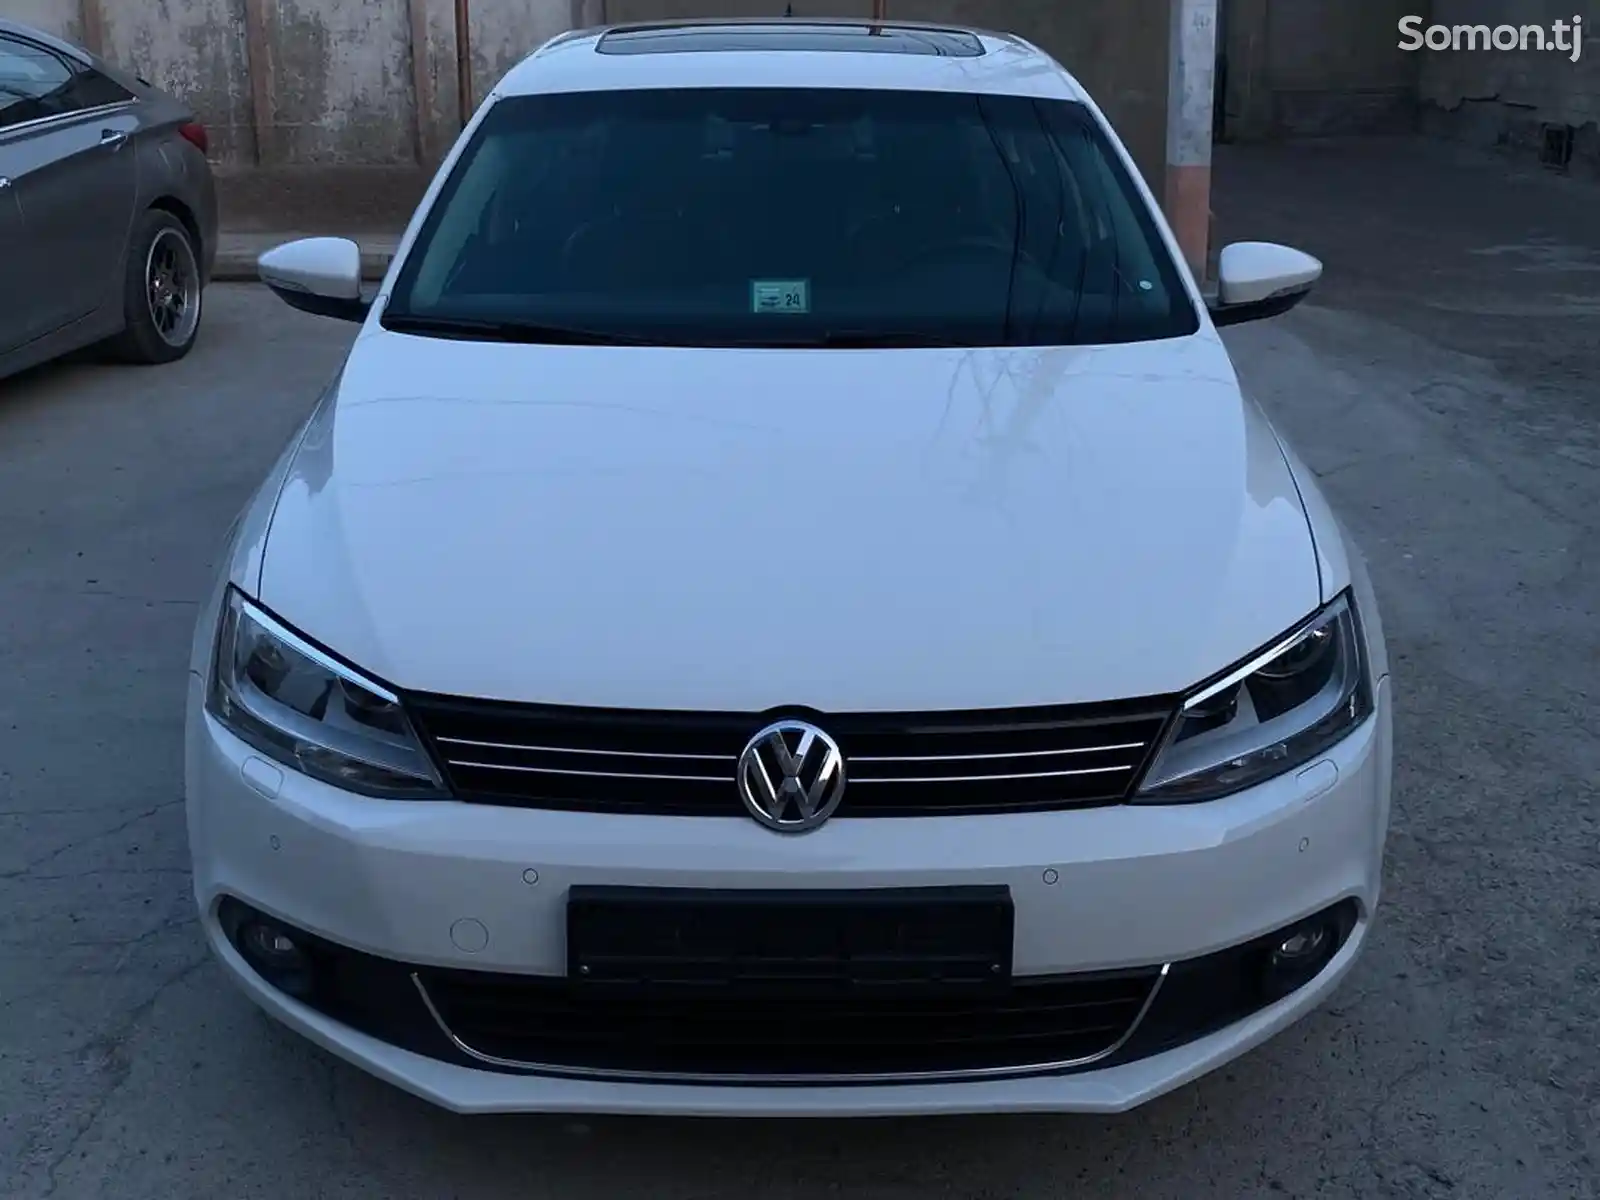 Volkswagen Jetta, 2013-2